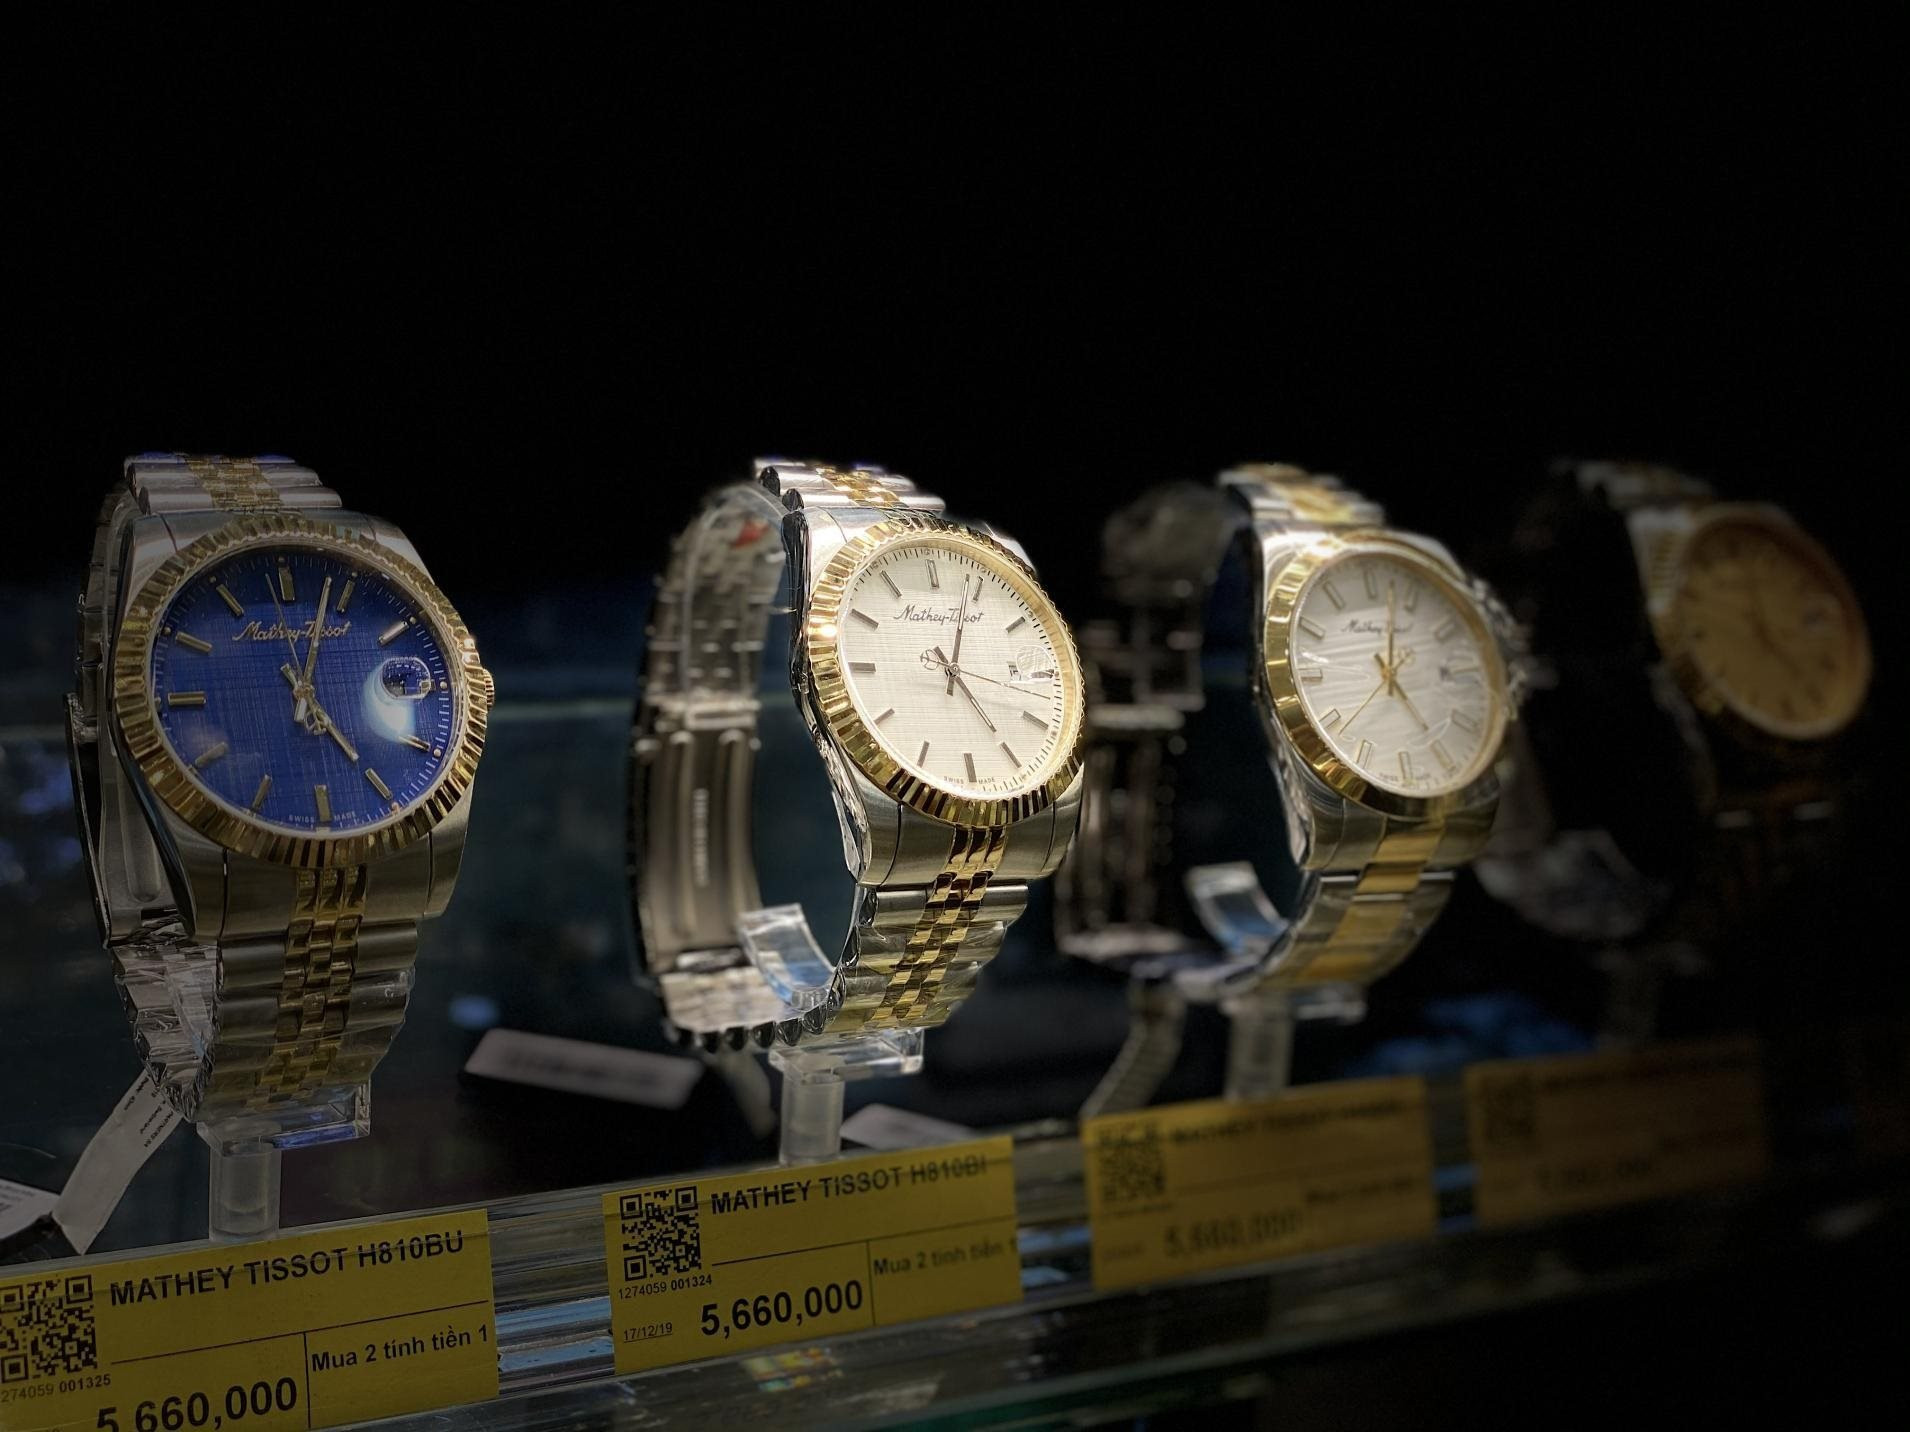 Thế Giới Di Động đang dẫn đầu điểm bán lẻ đồng hồ thời trang